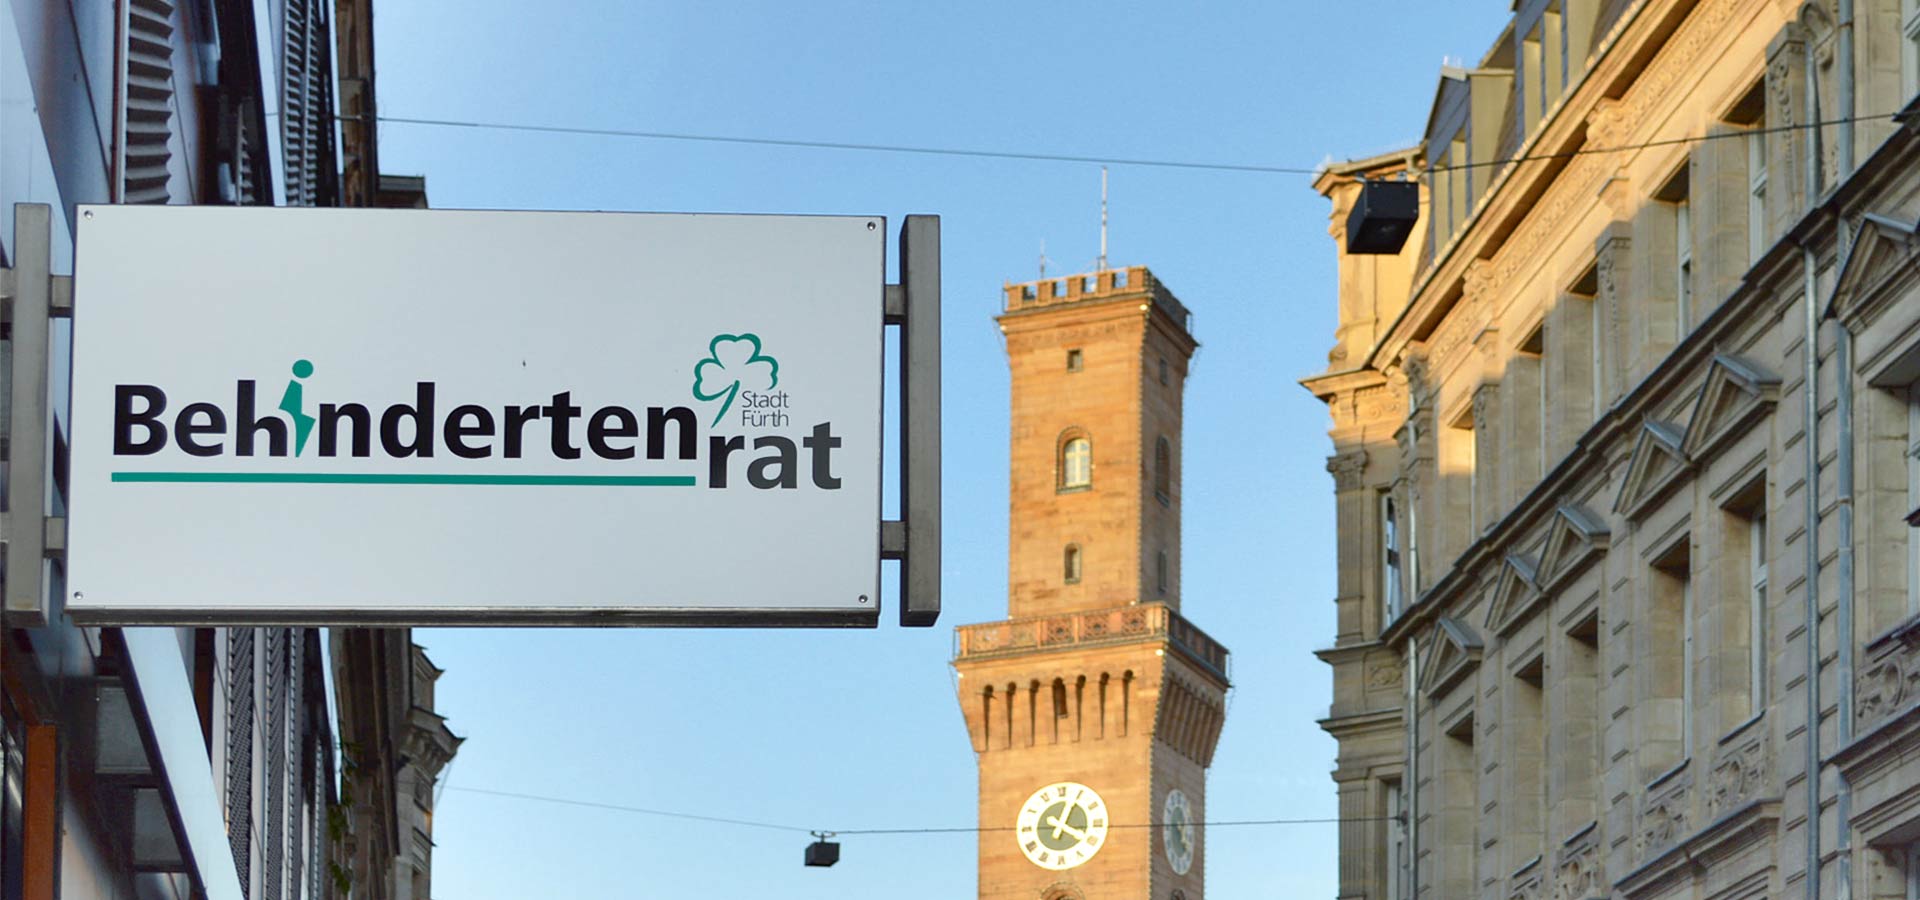 Ein Schild an einem Gebäude in Fürth mit dem Logo des Behindertenrats, im Hintergrund sieht man den Turm von Rathaus.